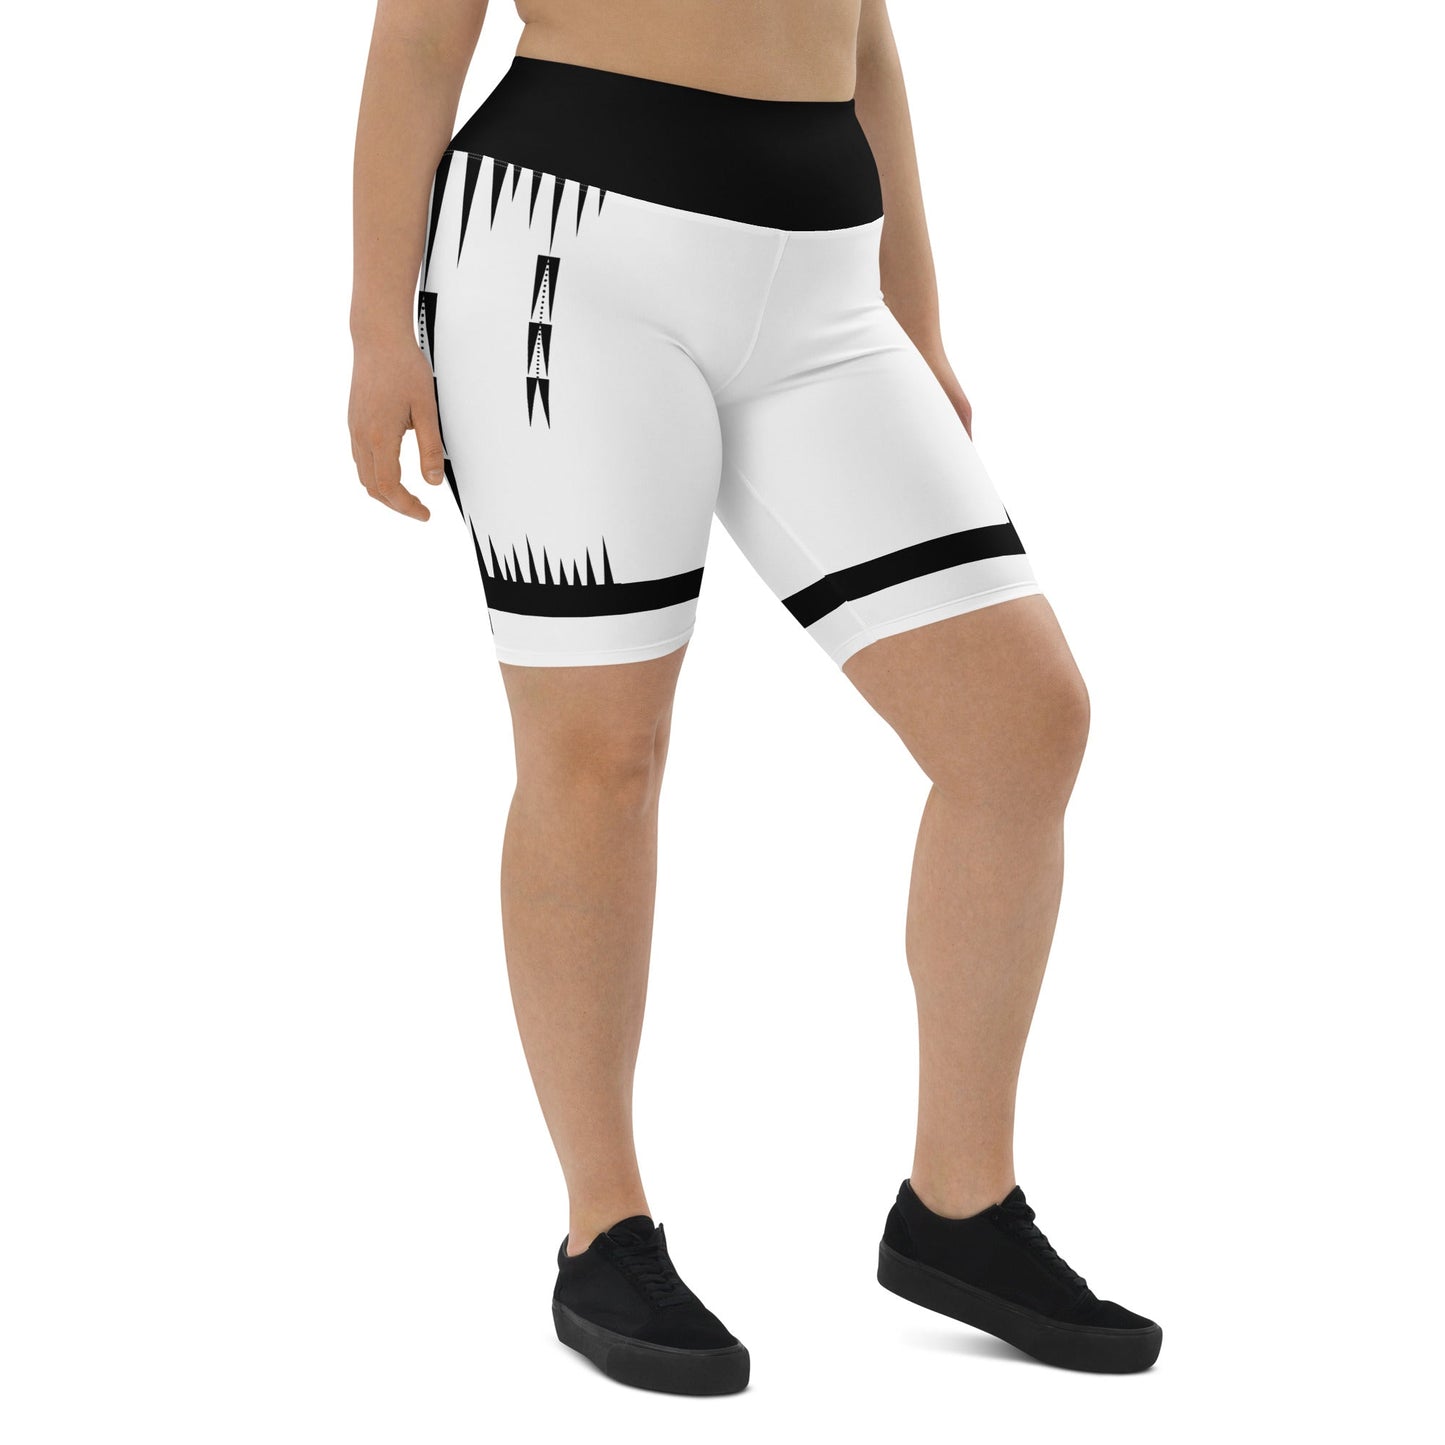 Native Print Biker Shorts Plus Size - Nikikw Designs